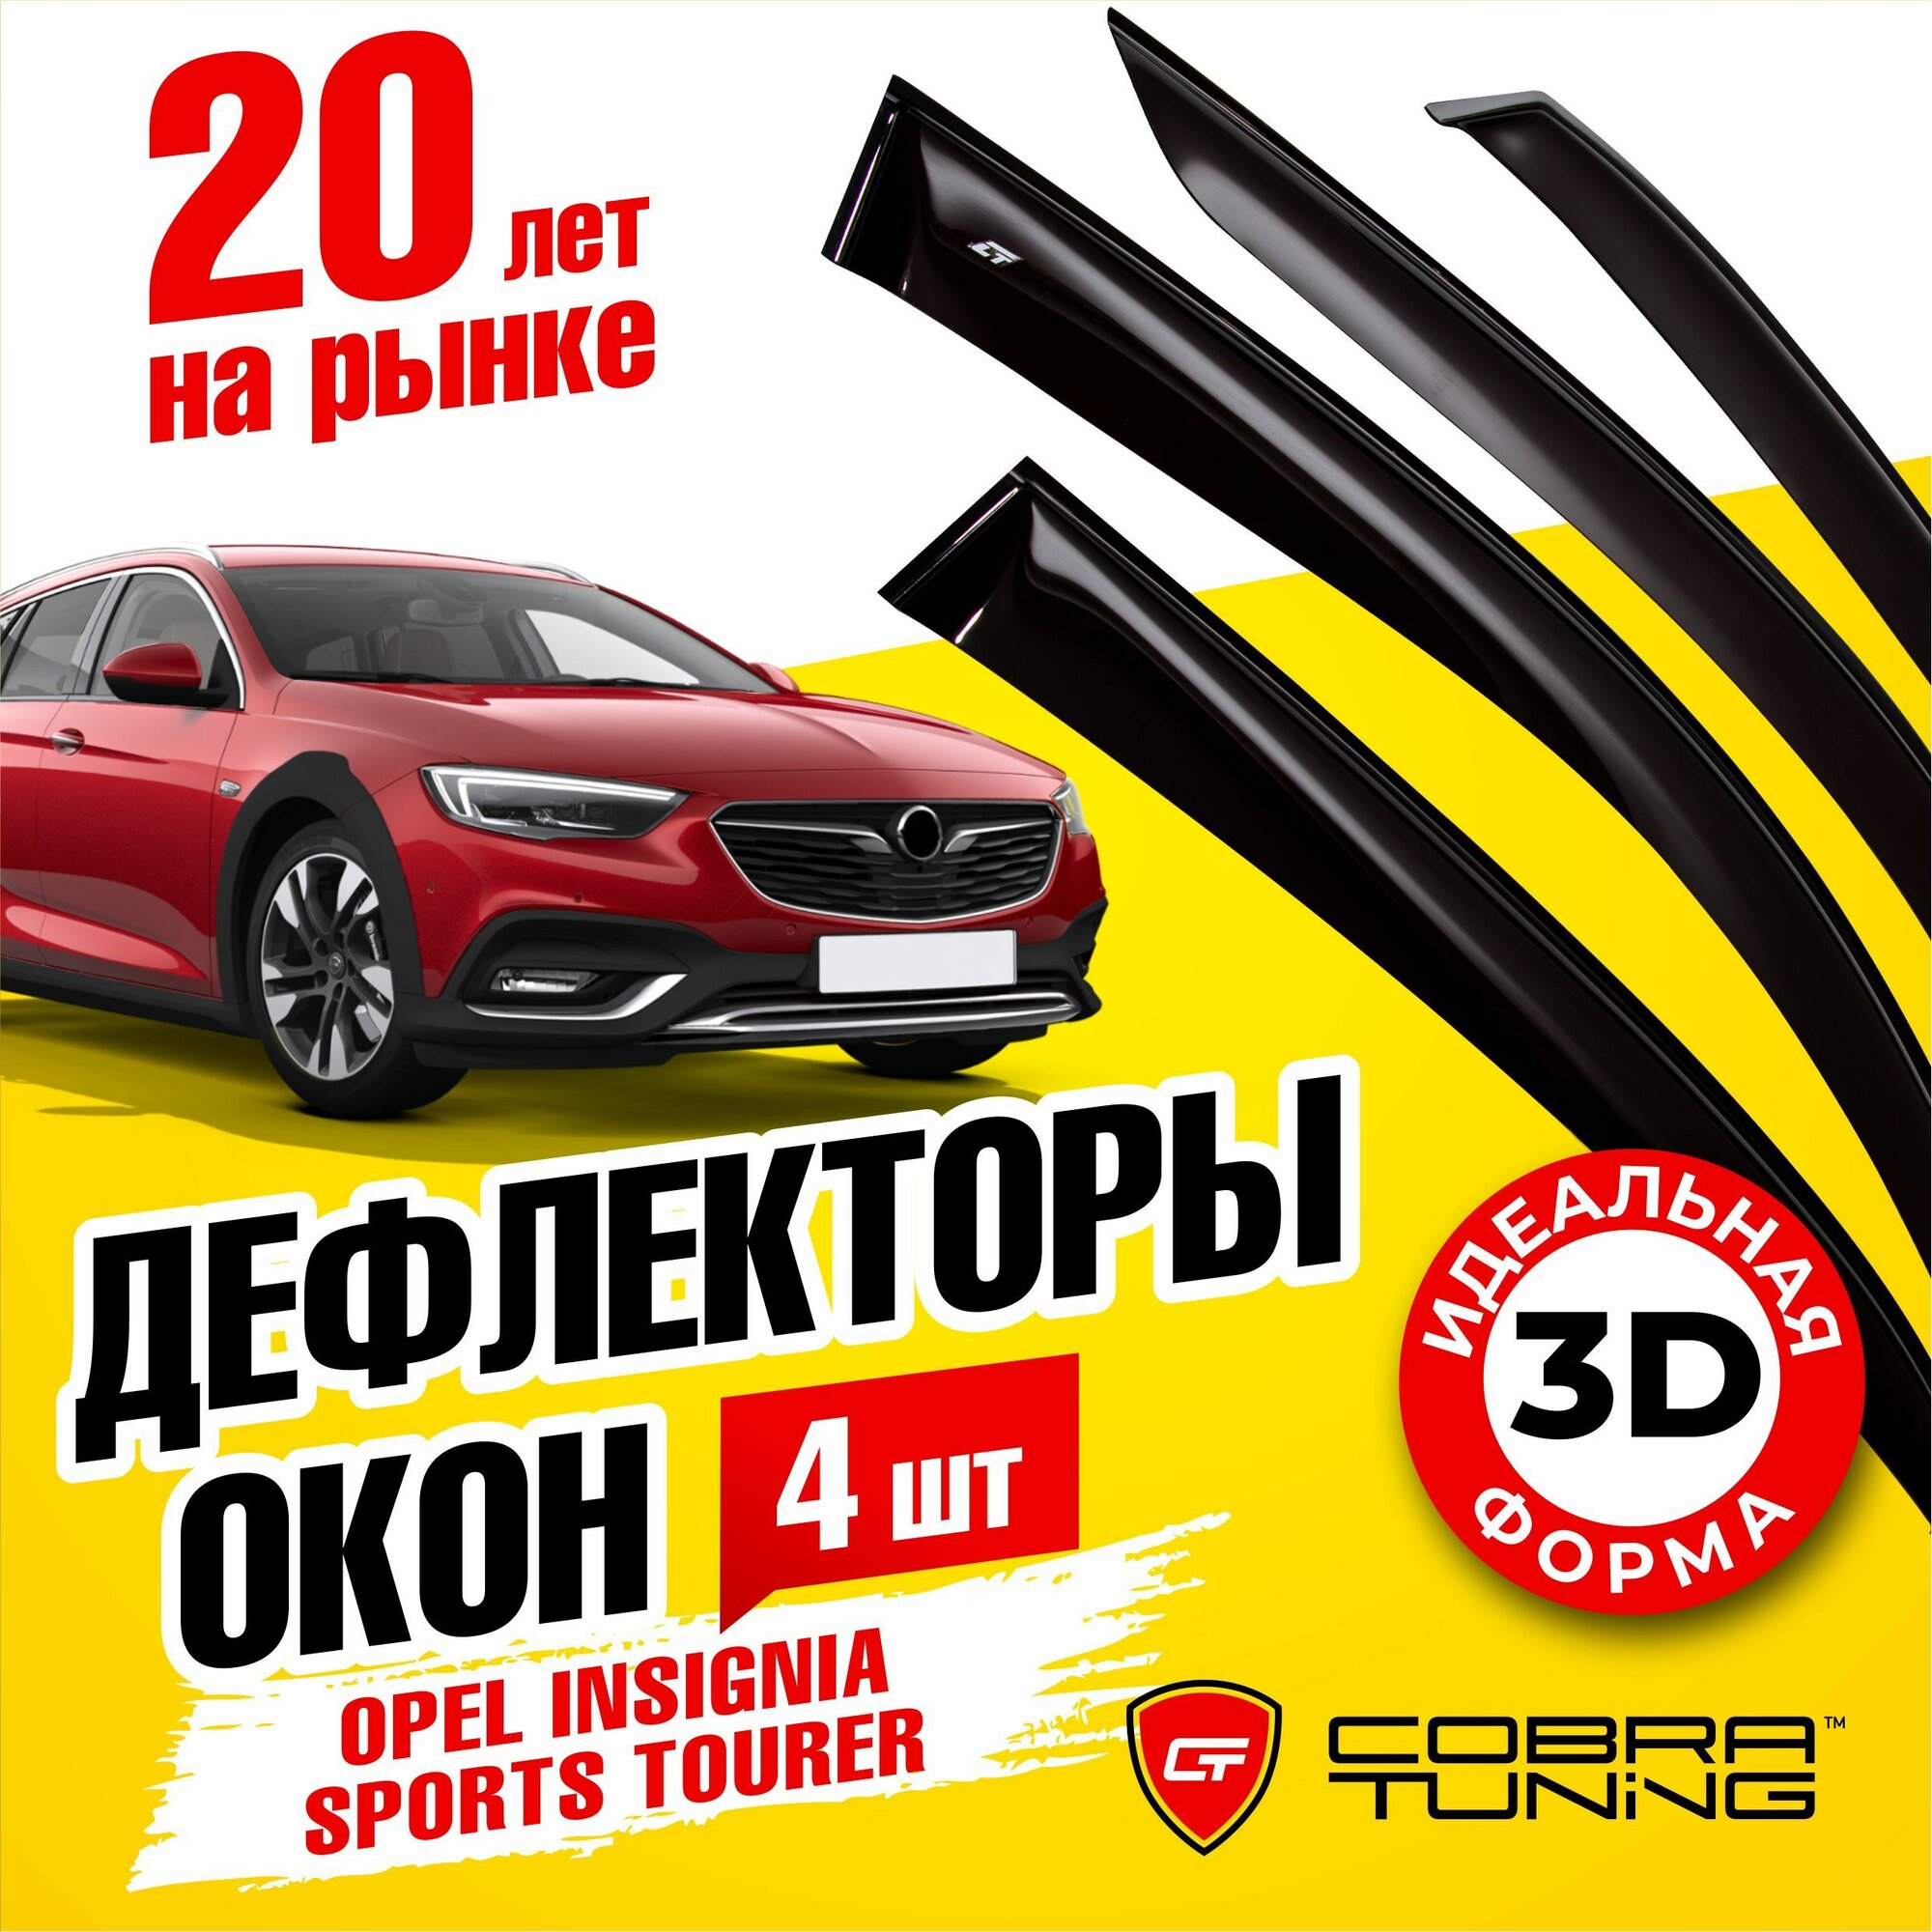 Дефлекторы боковых окон для Opel Insignia Sports Tourer (Опель Инсигния Спорт Турер) универсал 2017-2022, ветровики на двери автомобиля, Cobra Tuning